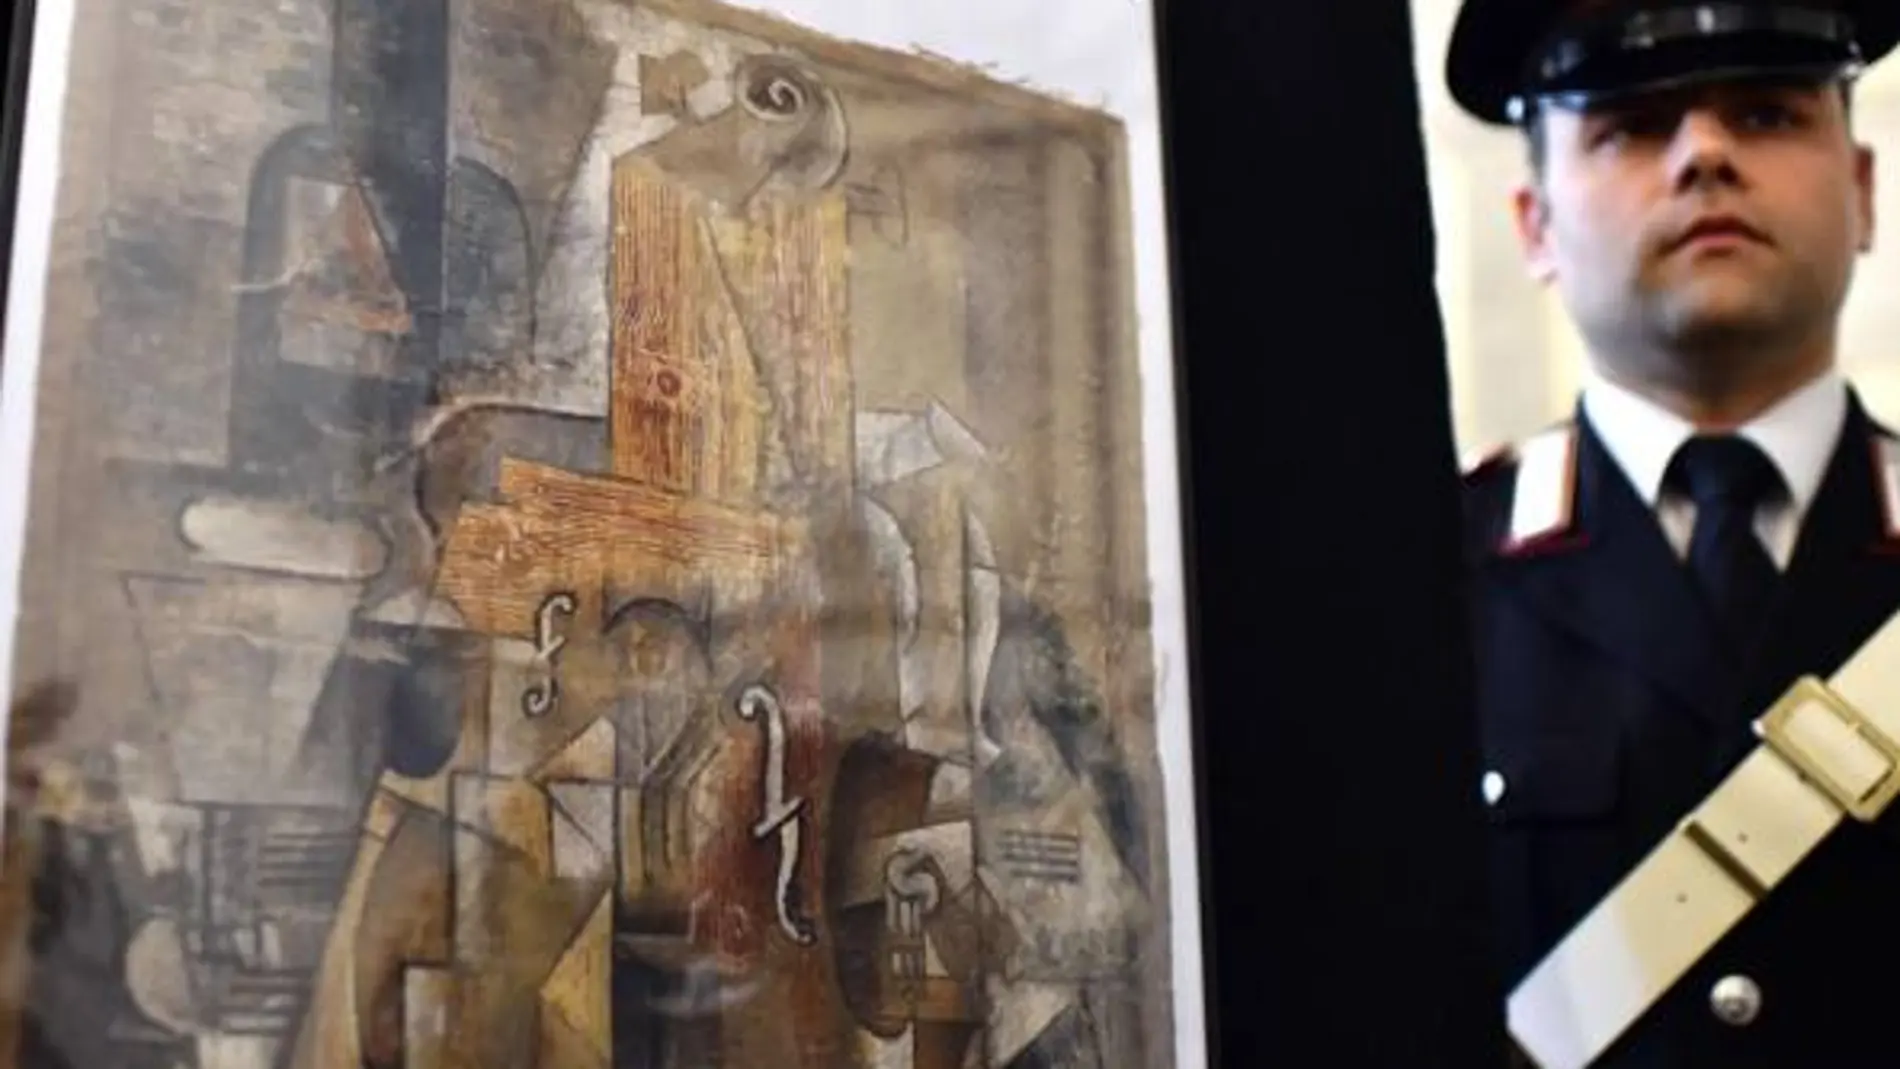 La Policía italiana recupera un Picasso robado valorado en 15 millones